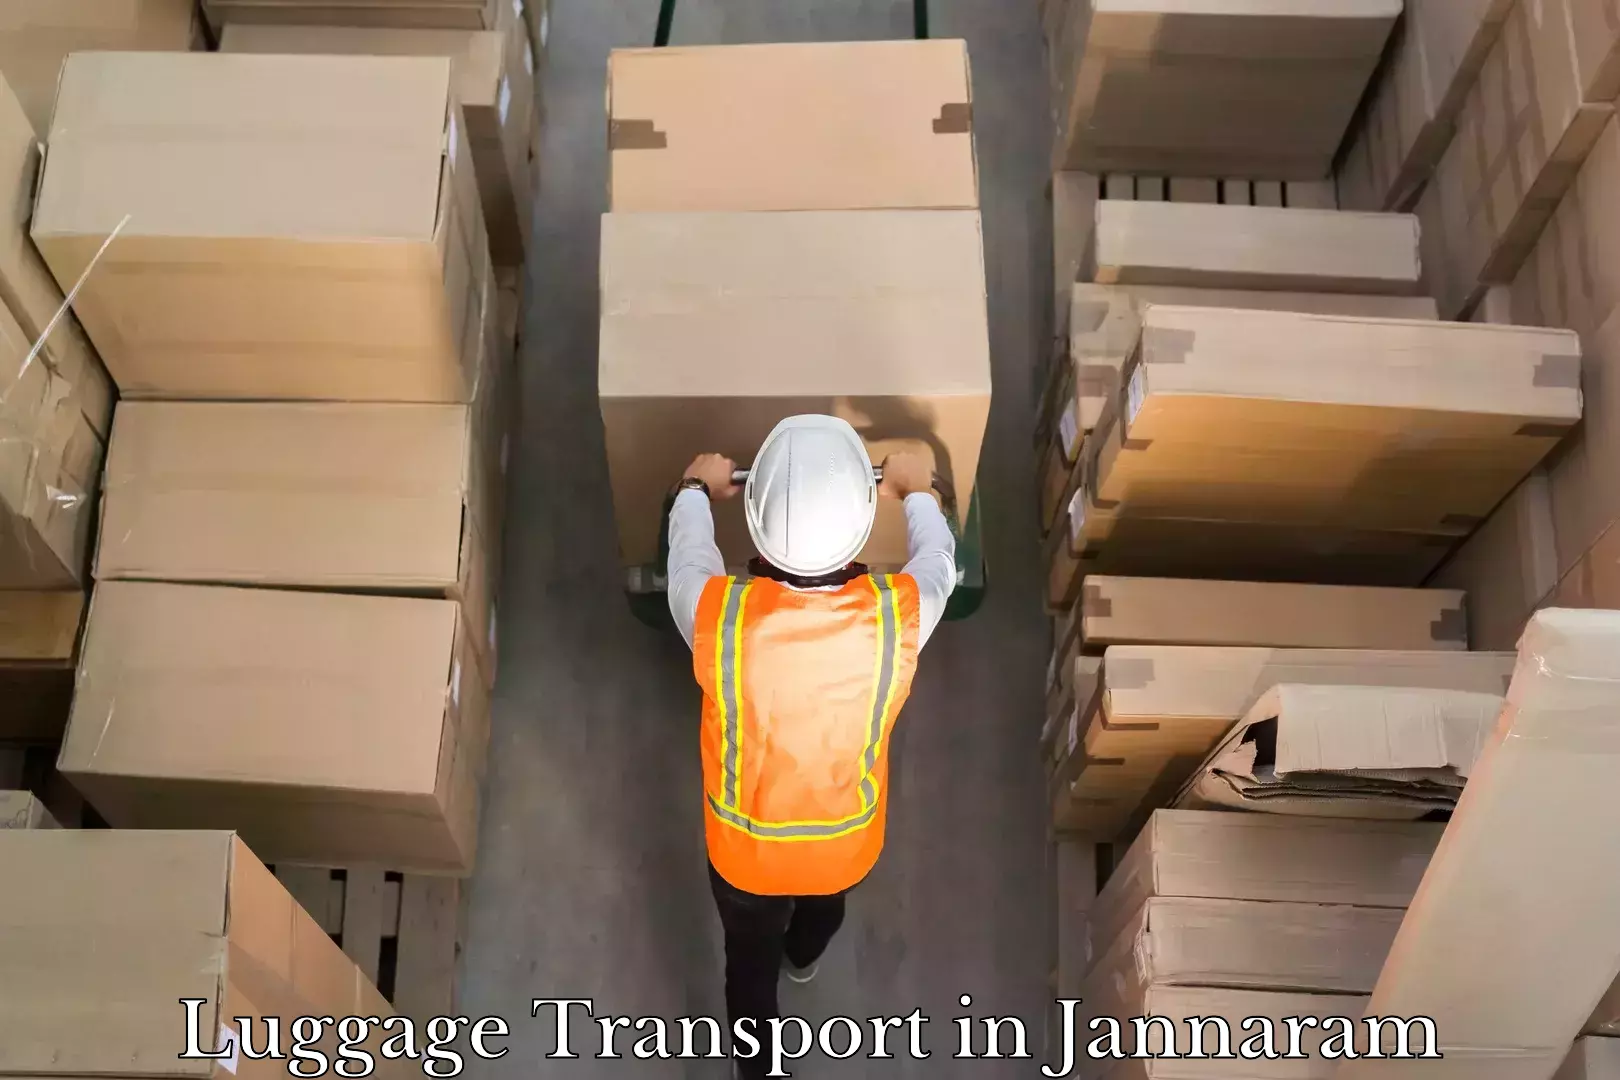 Luggage shipment strategy in Jannaram